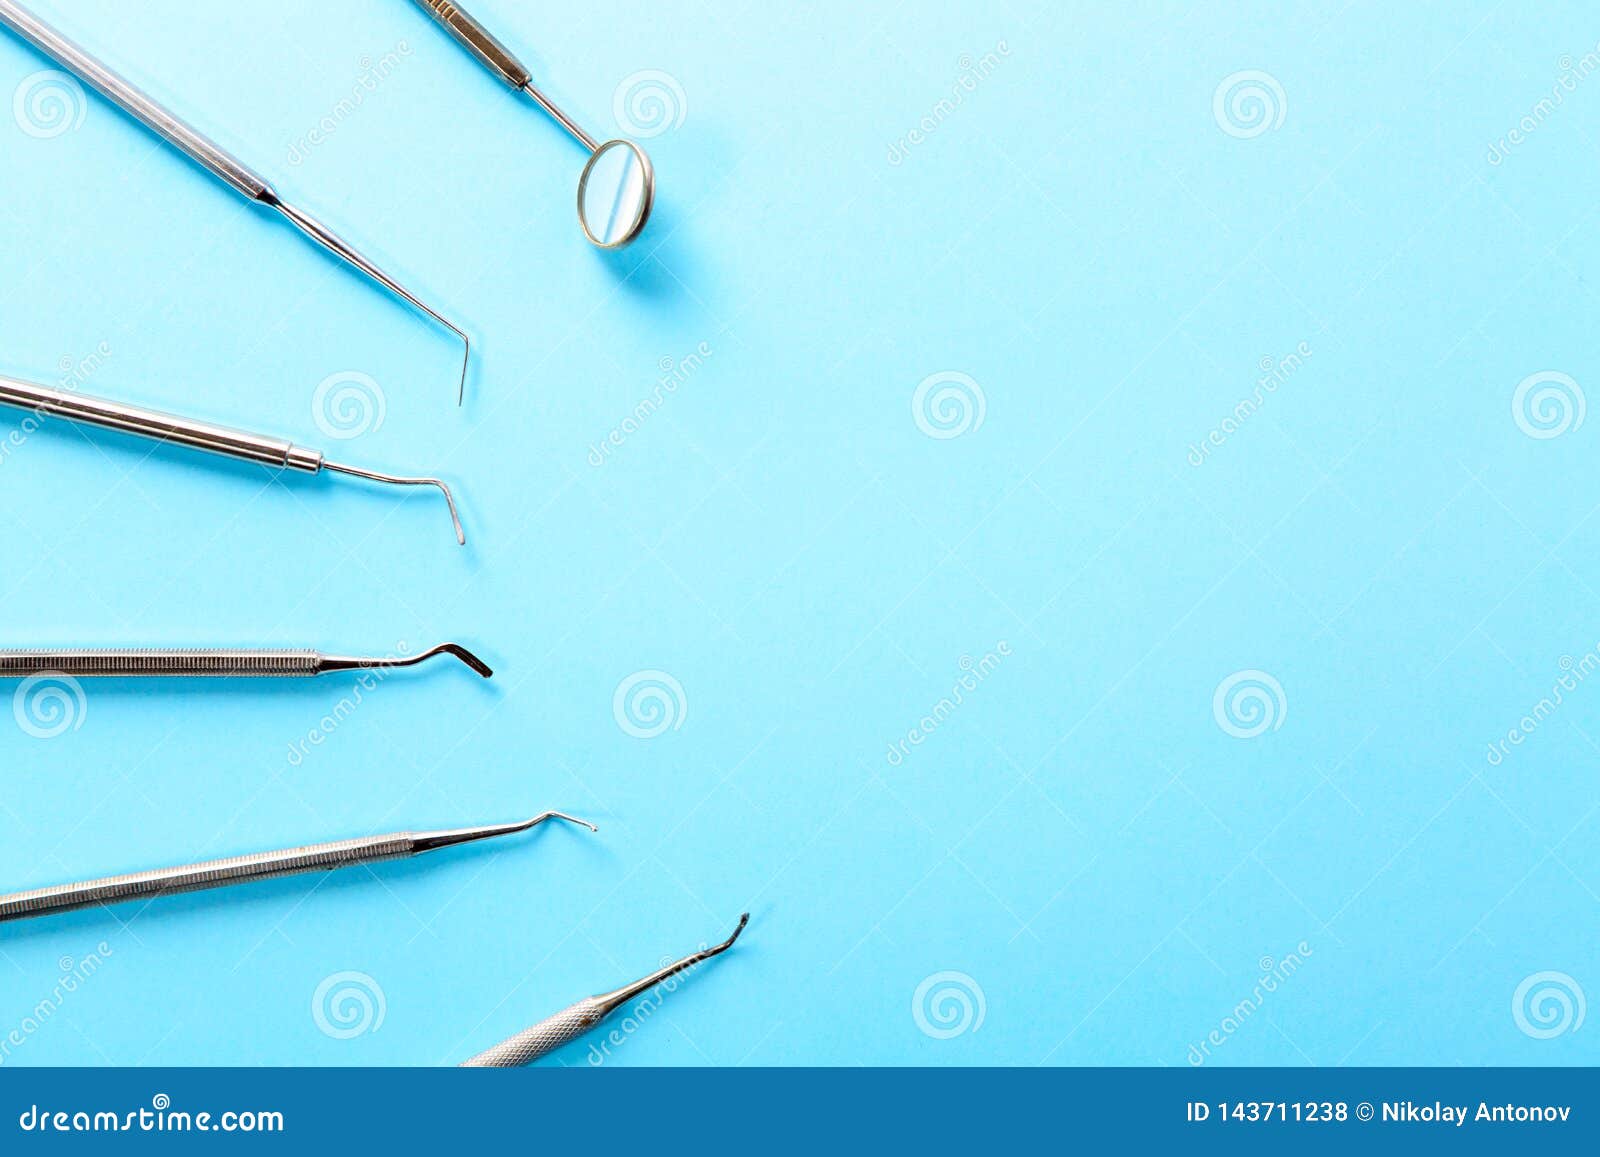 Инструменты дантиста Профессиональные стальные зубоврачебные аппаратуры с зеркалом на светлом - голубая предпосылка с открытым космосом Зубоврачебная концепция здоровья и teethcare